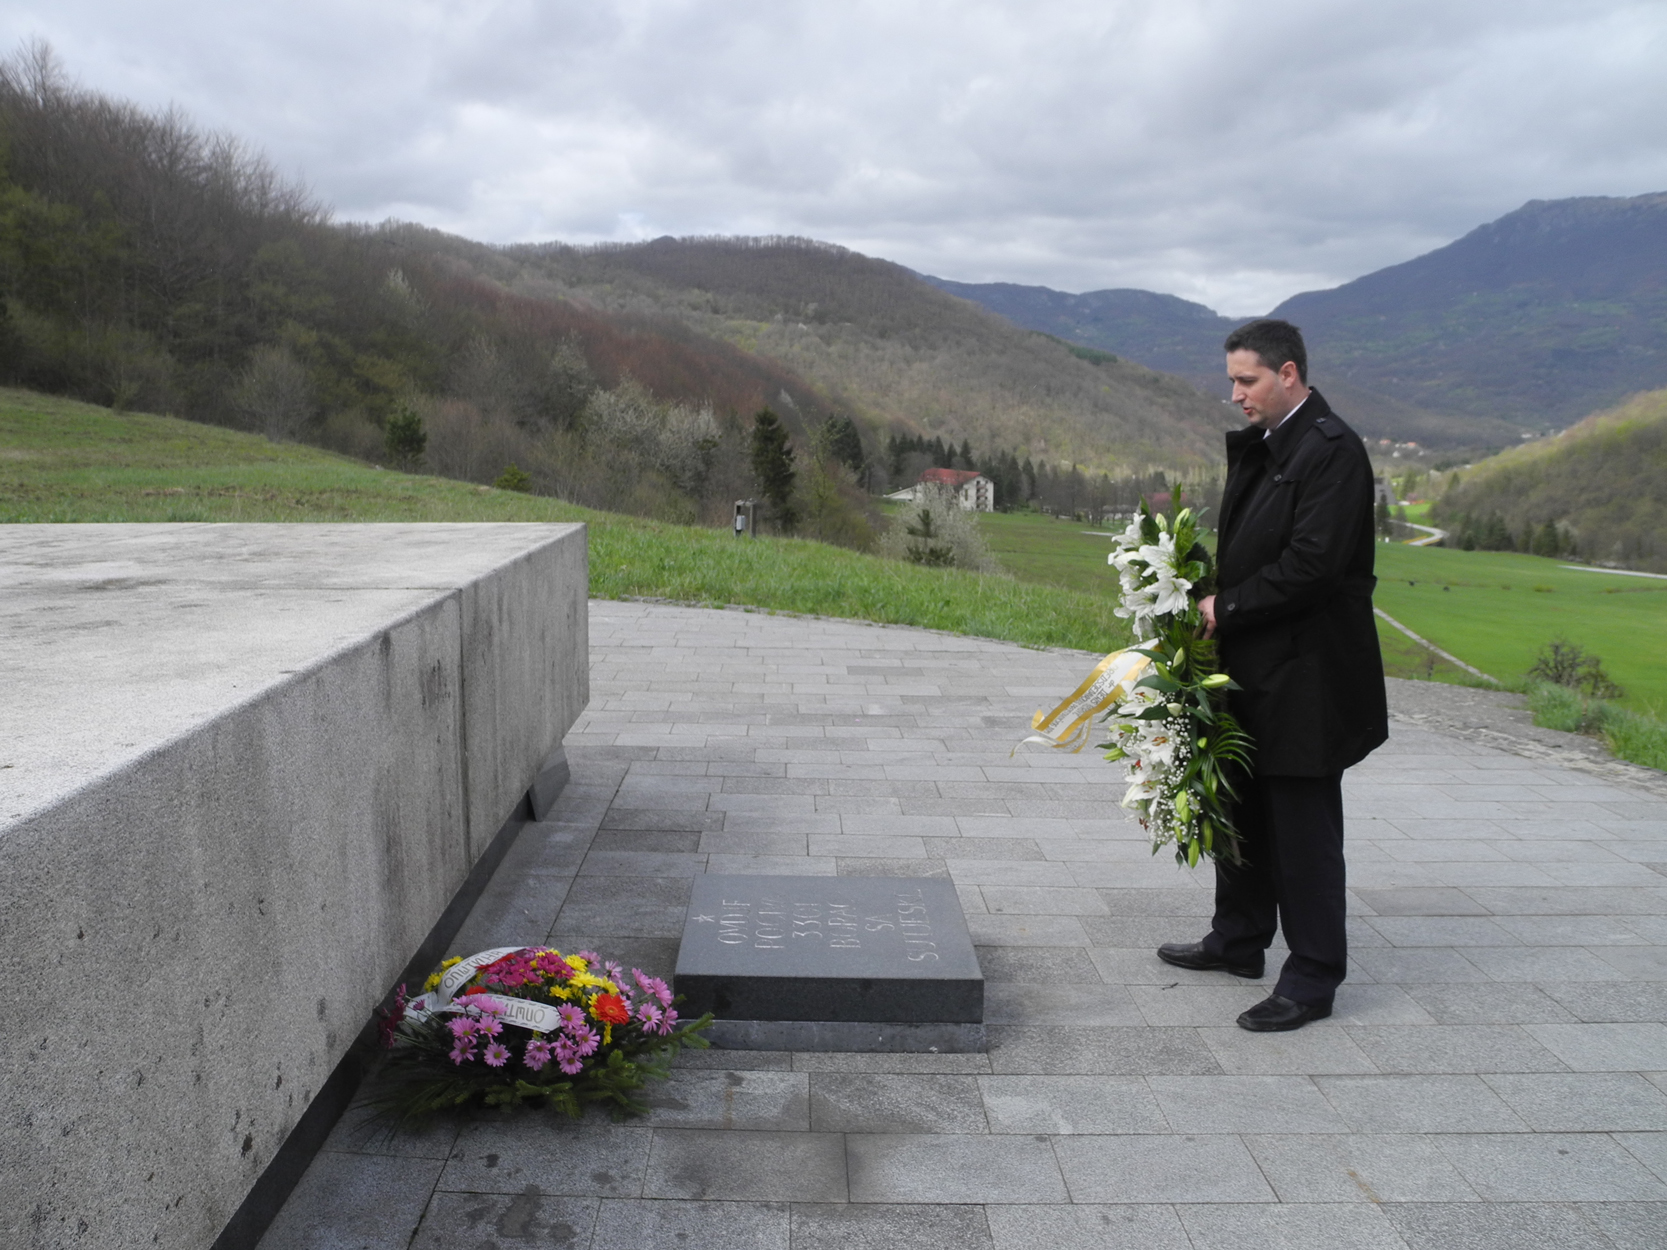 Zamjenik predsjedatelja Zastupničkog doma dr. Denis Bećirović posjetio Dolinu heroja na Sutjesci

